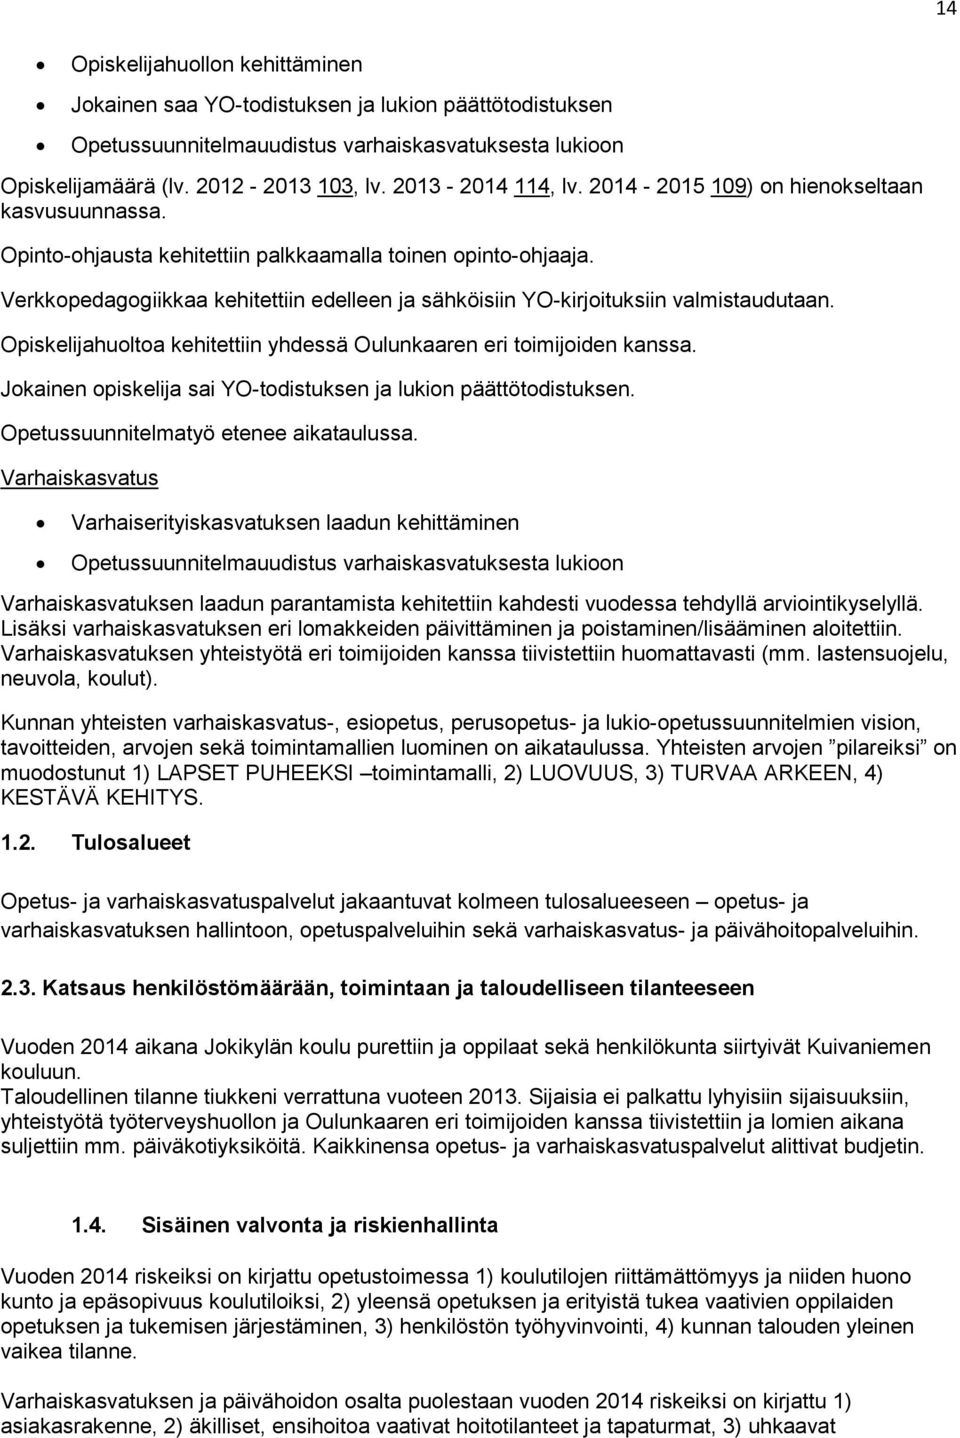 Verkkopedagogiikkaa kehitettiin edelleen ja sähköisiin YO-kirjoituksiin valmistaudutaan. Opiskelijahuoltoa kehitettiin yhdessä Oulunkaaren eri toimijoiden kanssa.